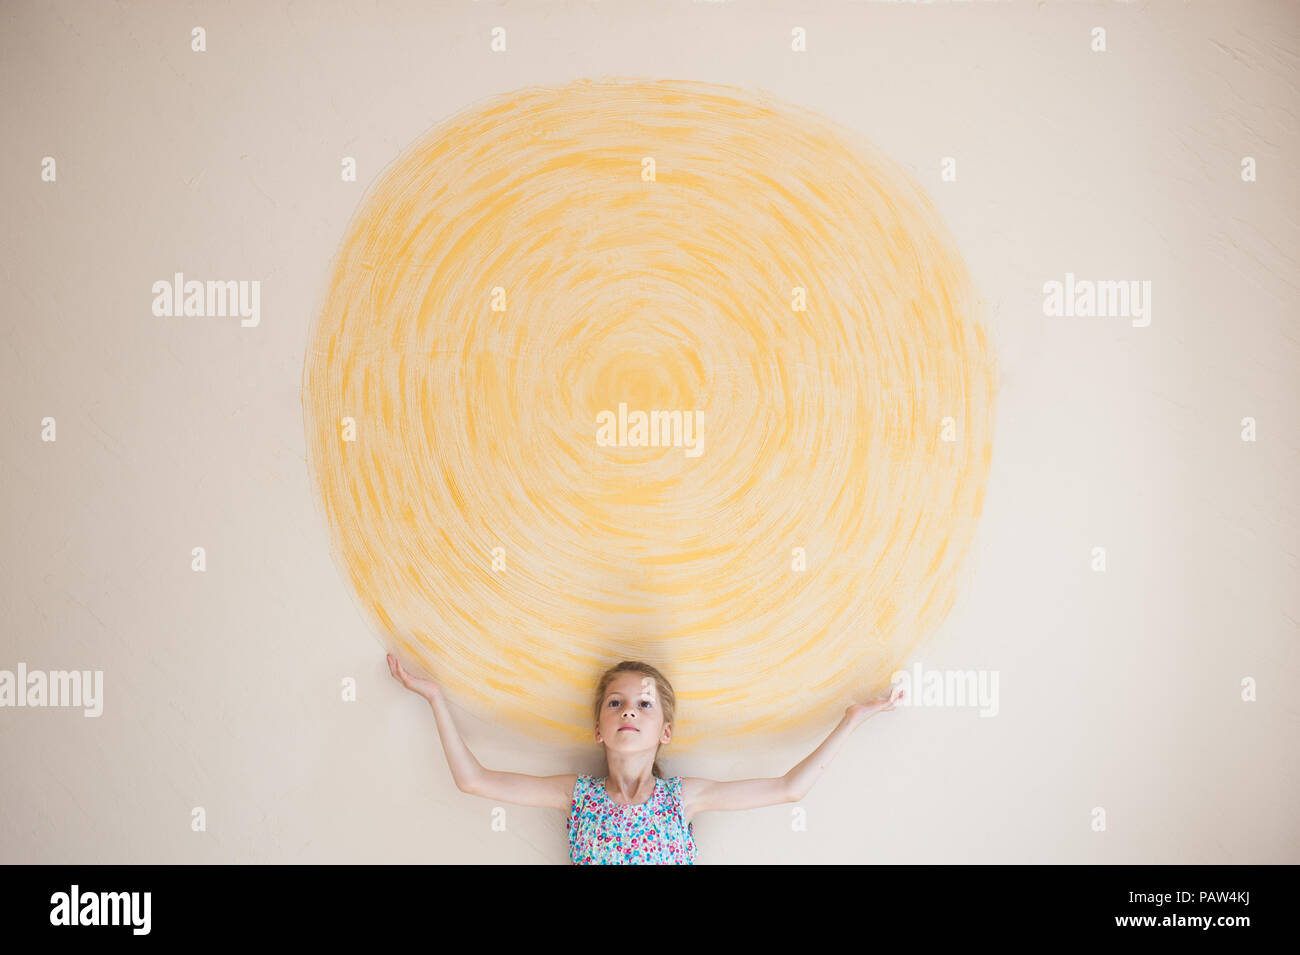 Concept de belles caucasian girl holding soleil peint sur mur jaune à l'intérieur Banque D'Images